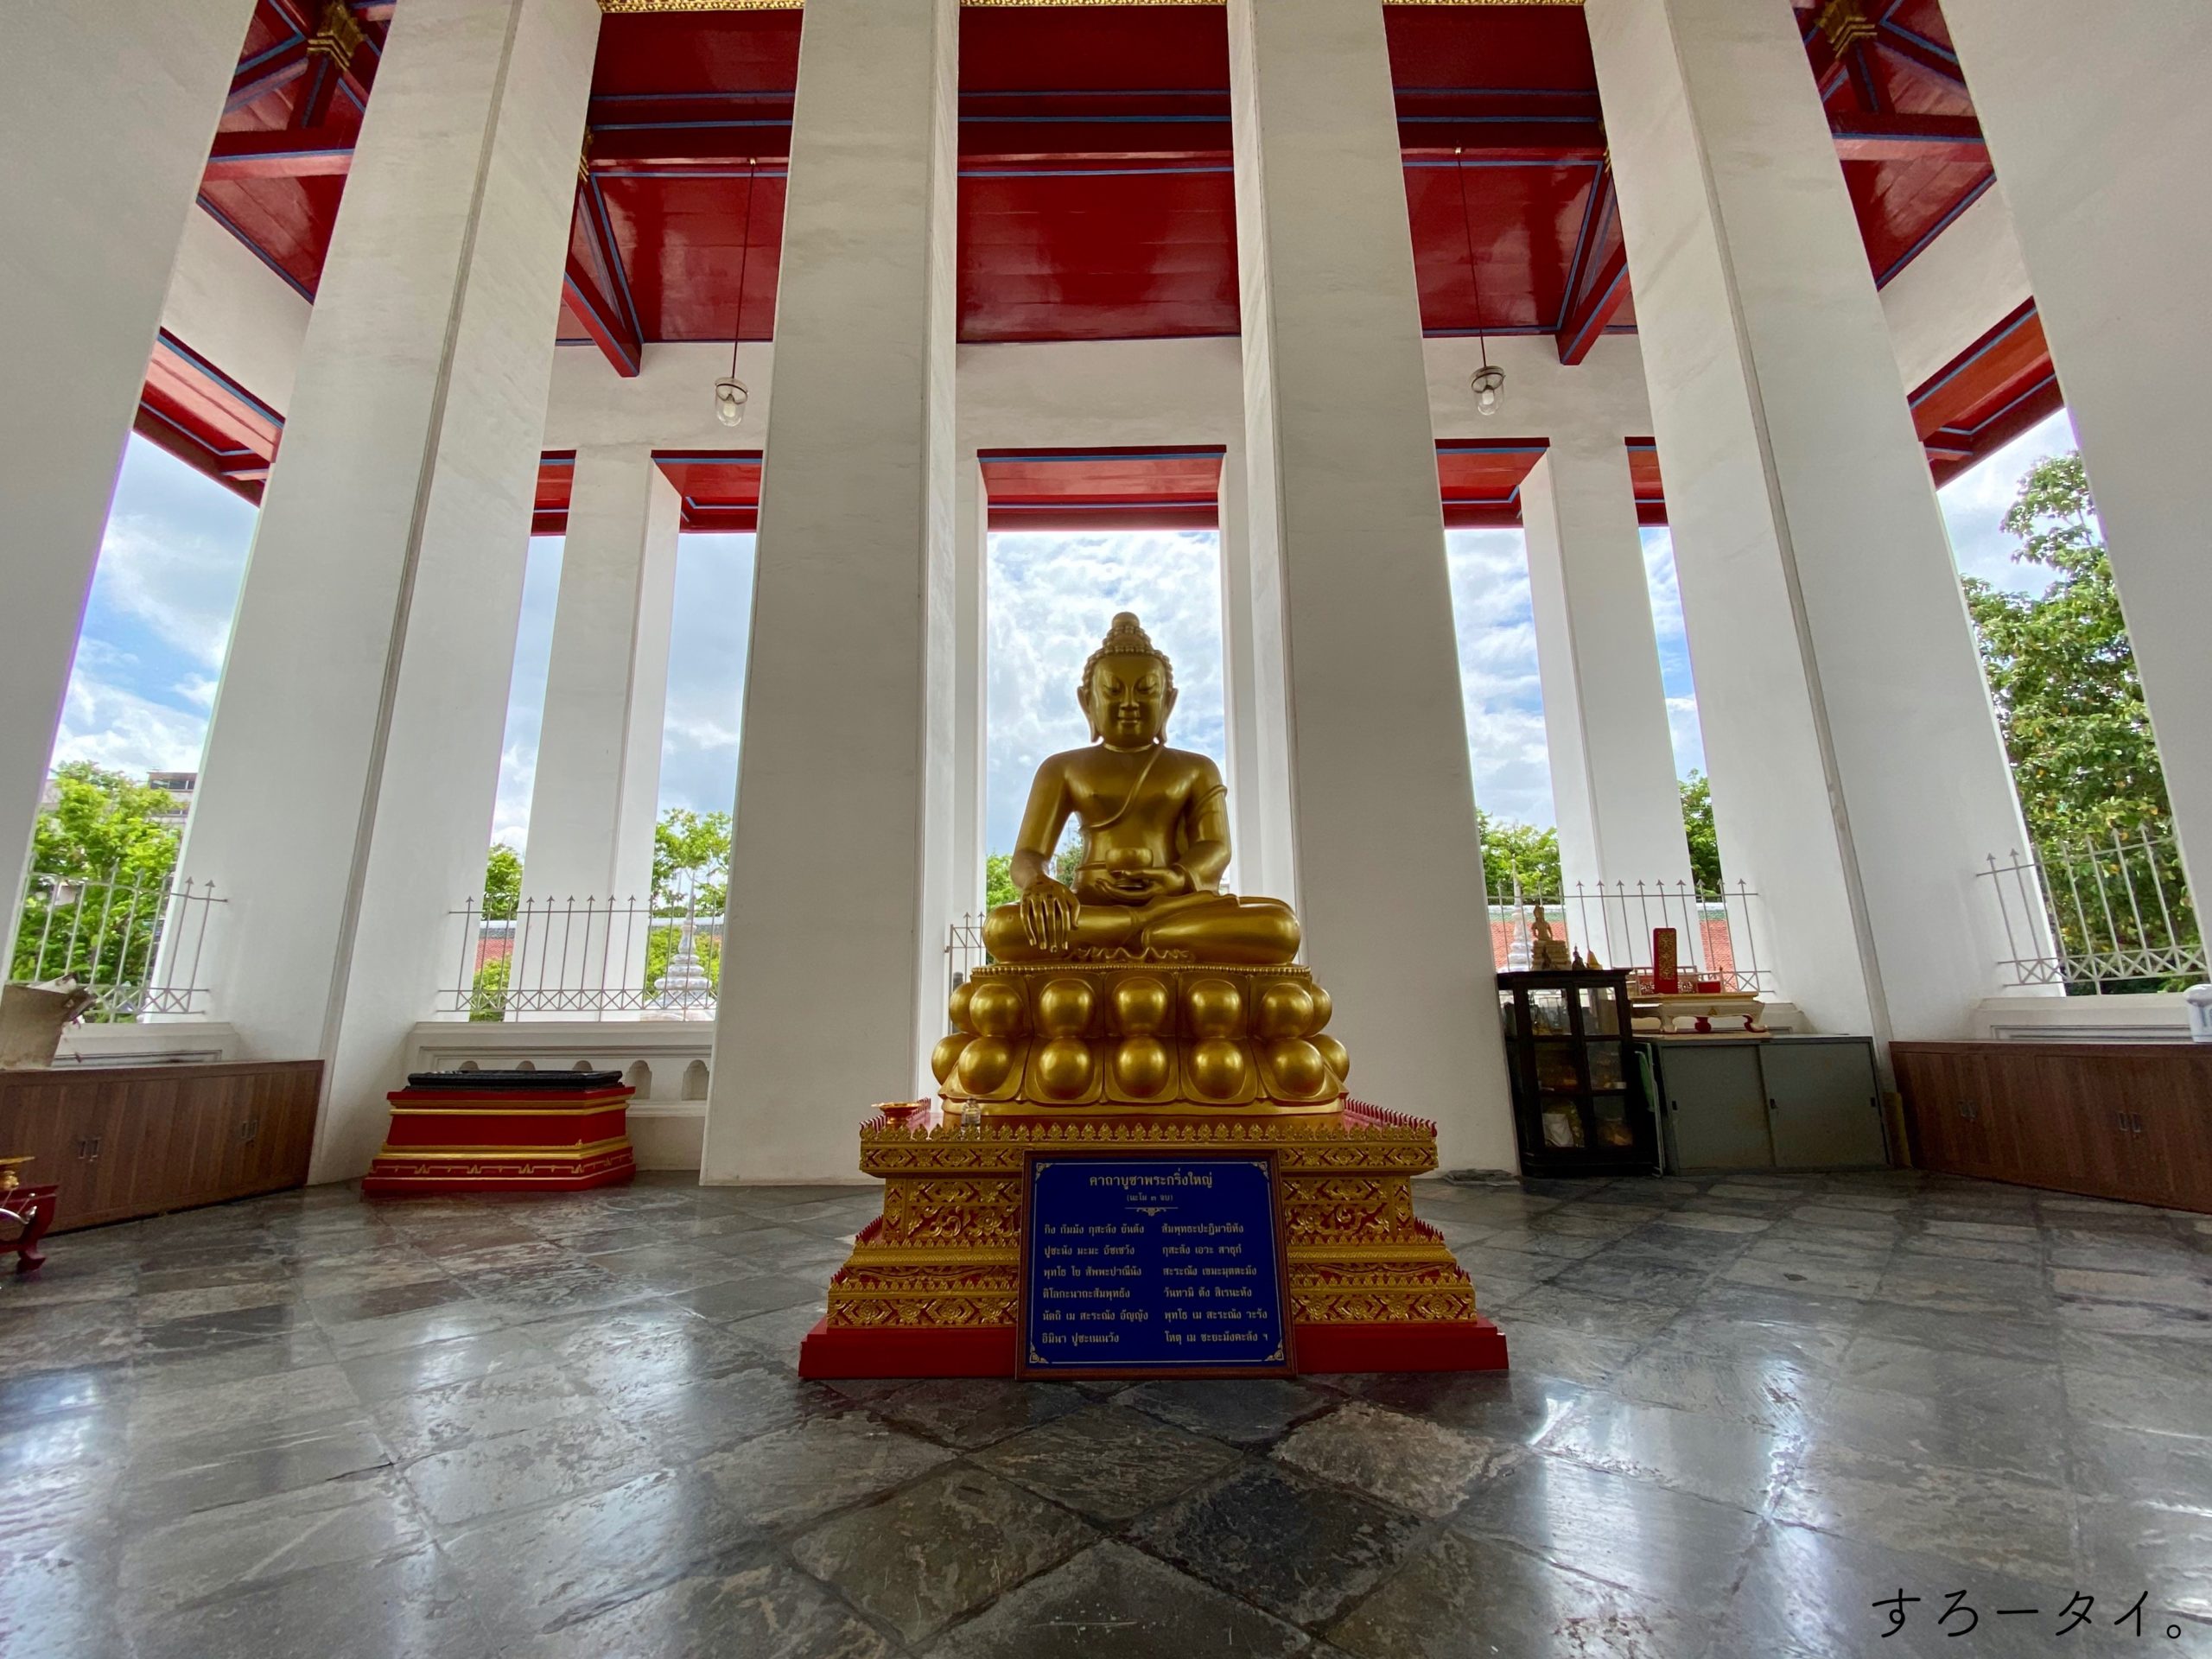 ワット・スタット テープワラーラームラーチャウォラマハーウィハーン　Wat Suthat Thepwararam Ratchaworamahawihan วัดสุทัศนเทพวรารามราชวรมหาวิหาร　